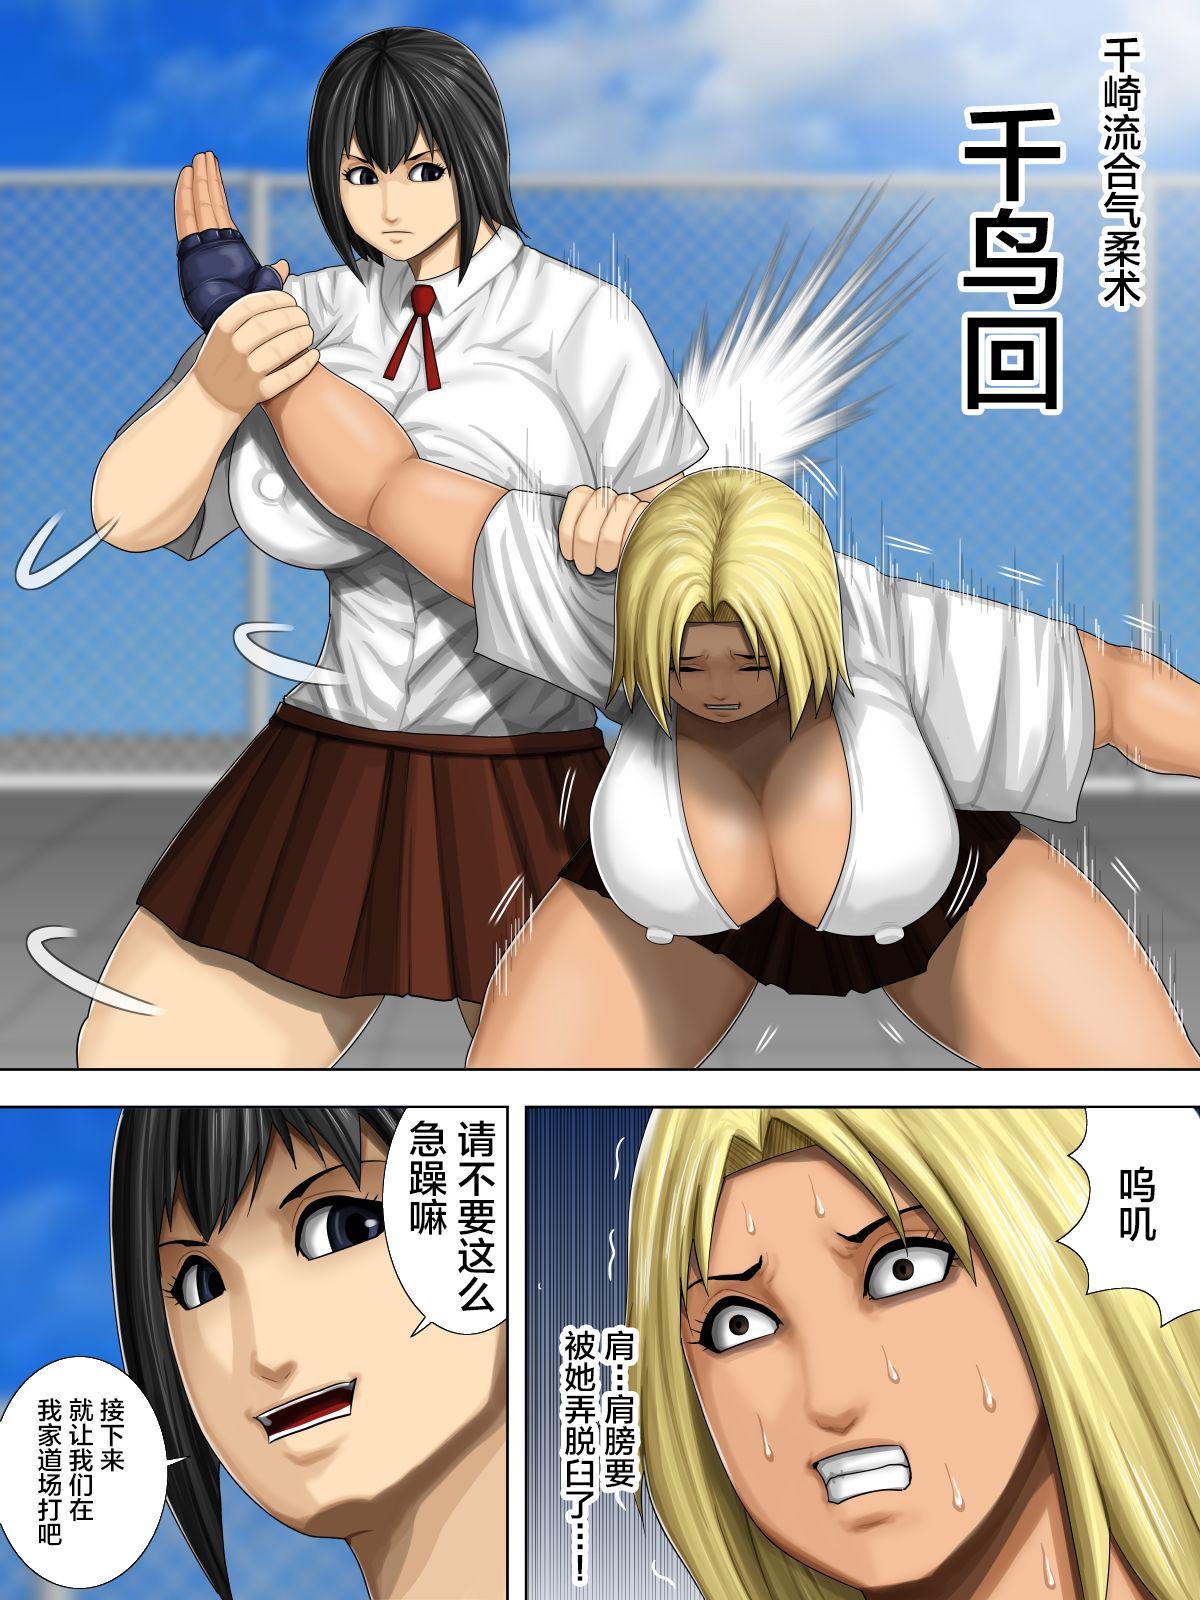 Furyou Musume vs Aiki Jujitsu 5